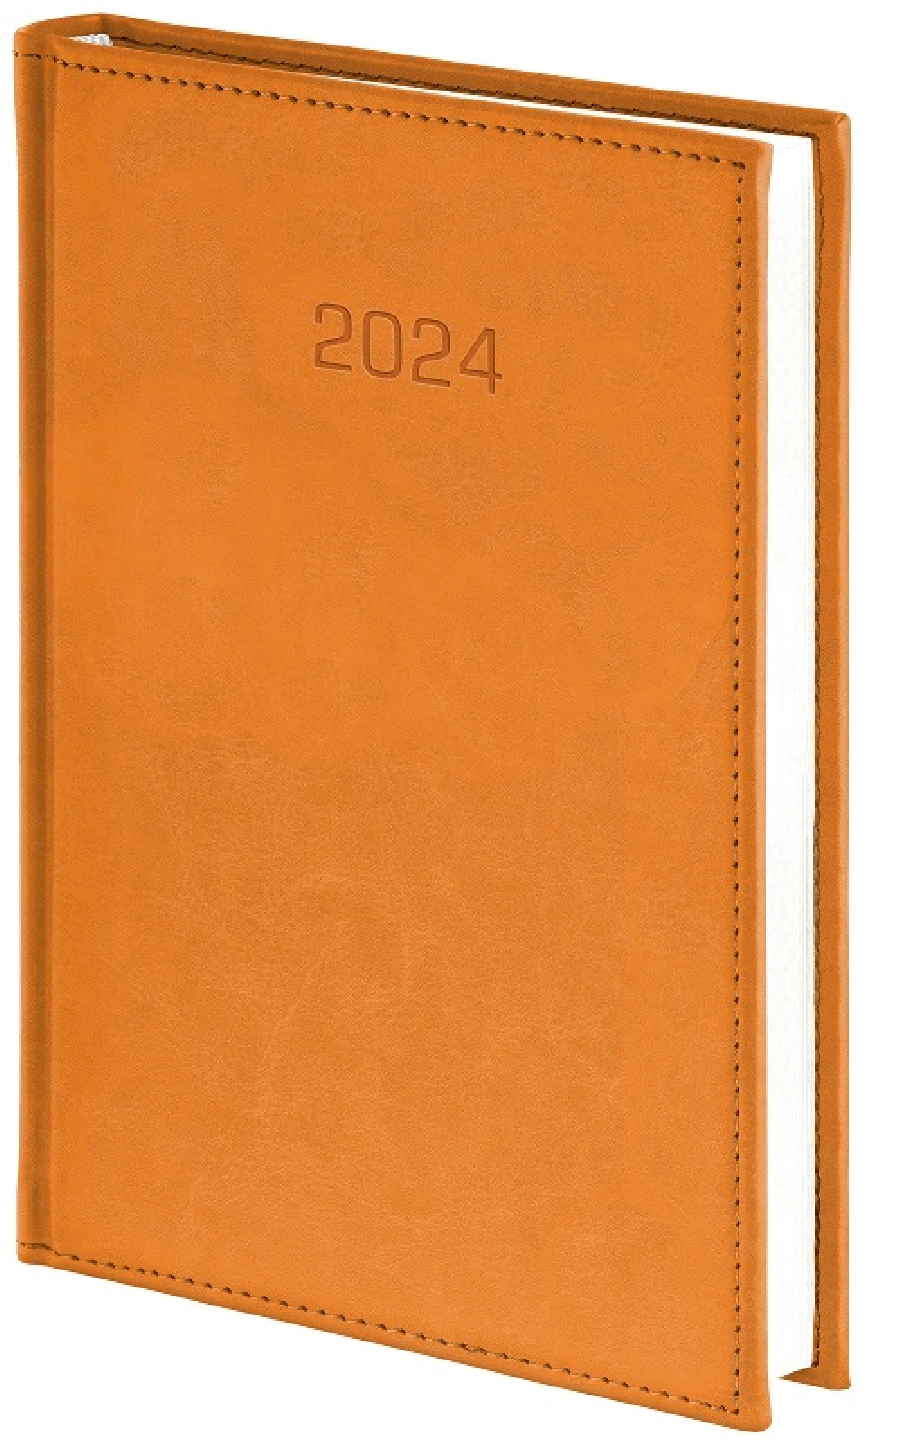 Nebraska kalendarz książkowy 2024 dzienny A5 GR-159248 brązowy